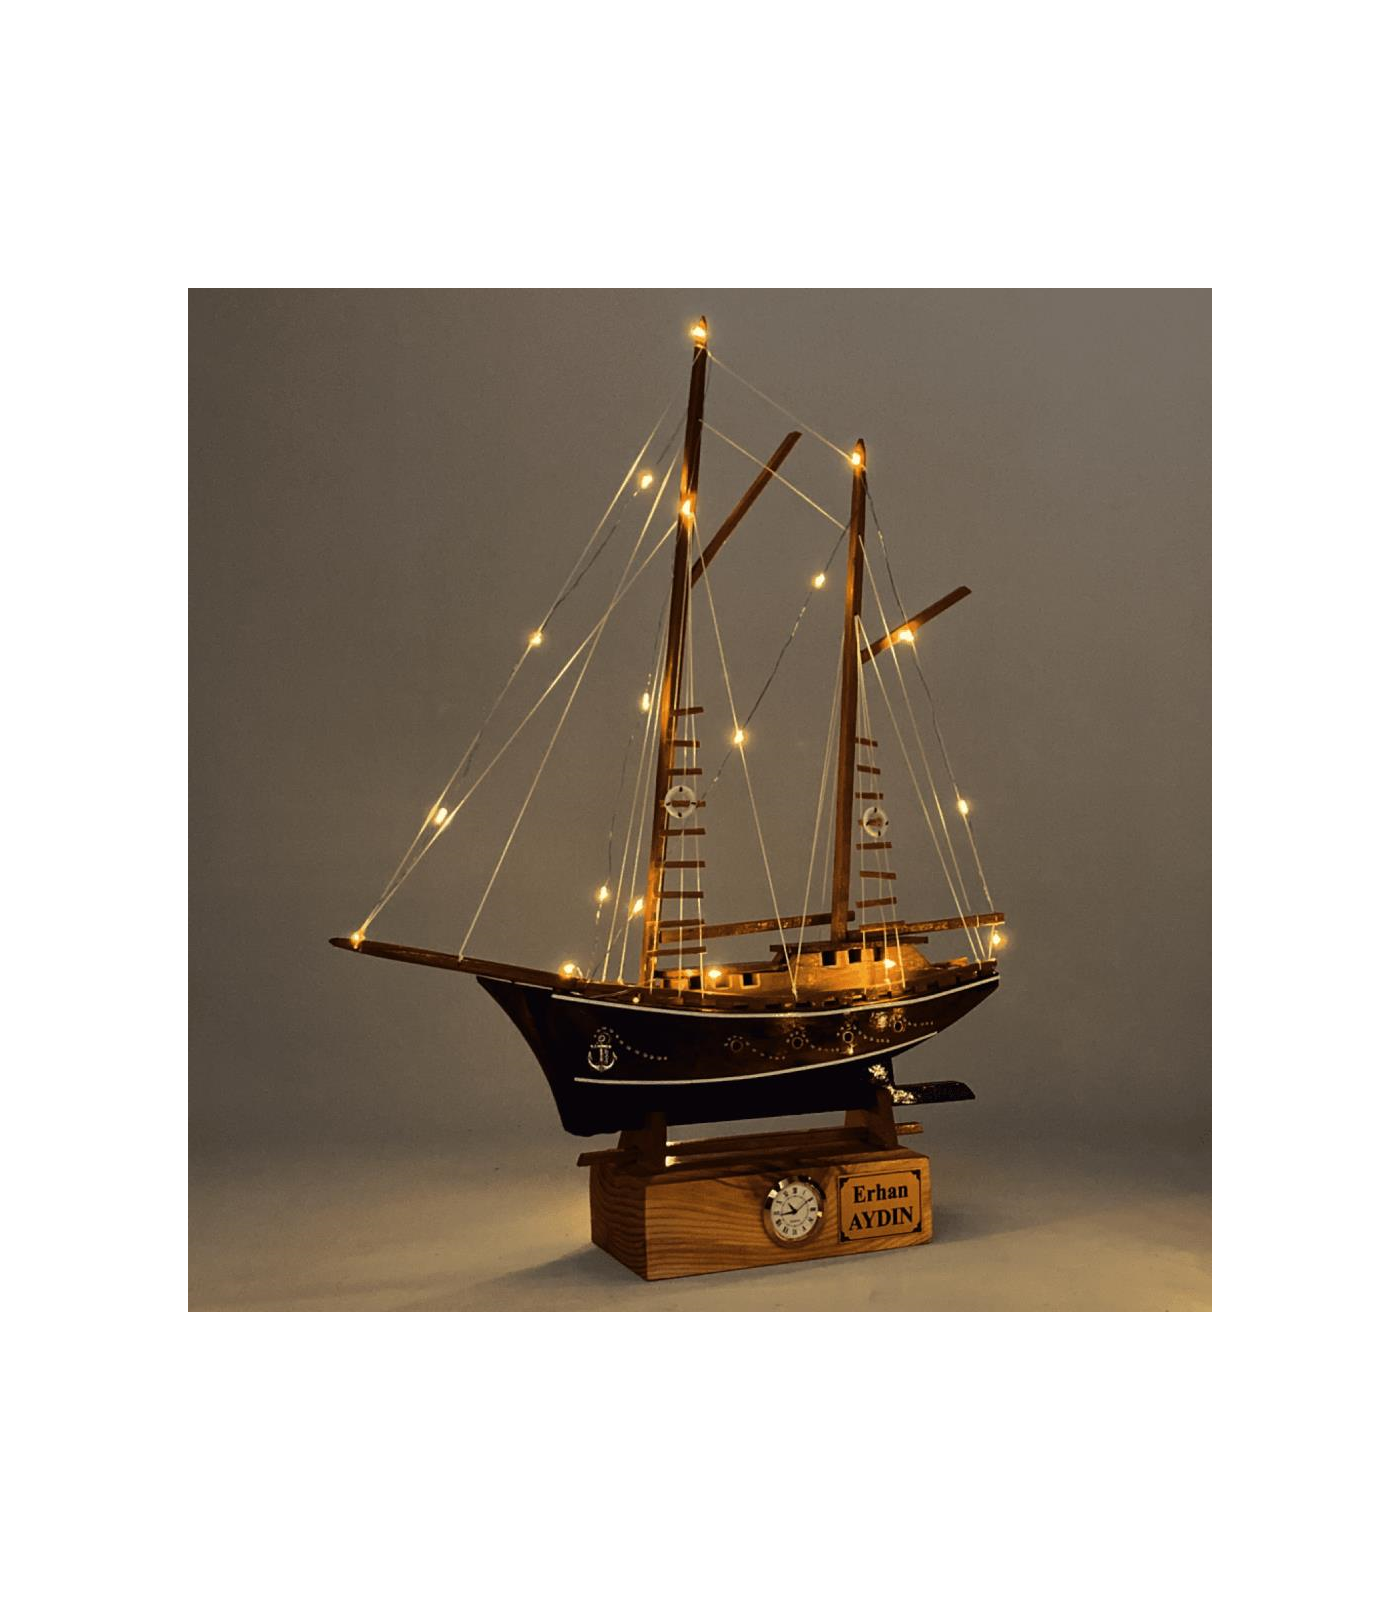 Kişiye Özel Tasarlanmış Doğal Ahşap Gemi Maketi, El Yapımı Led Işıklı ve Saatli